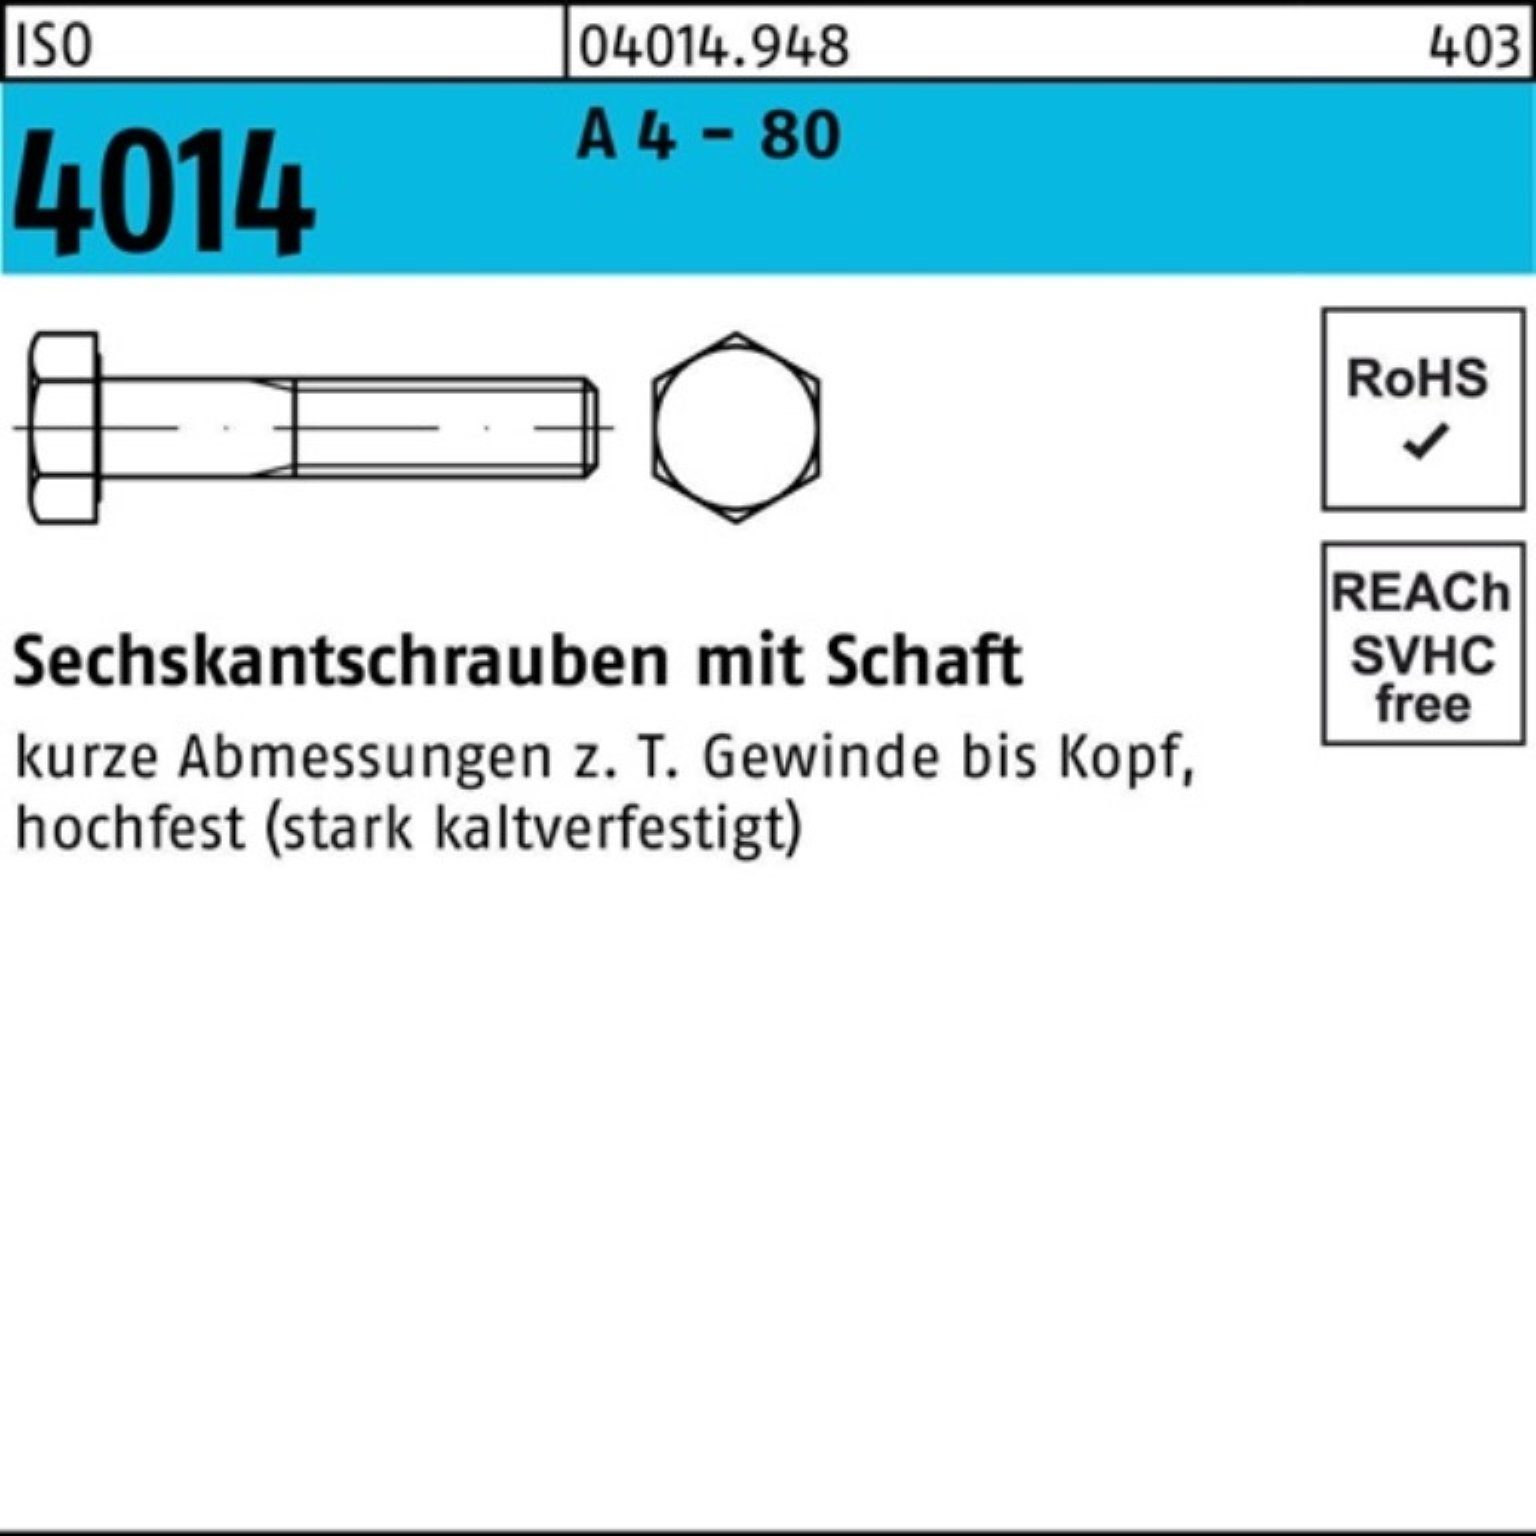 Pack Sechskantschraube Stüc Schaft 55 A 4 80 100 4014 Sechskantschraube - 100er M6x Bufab ISO